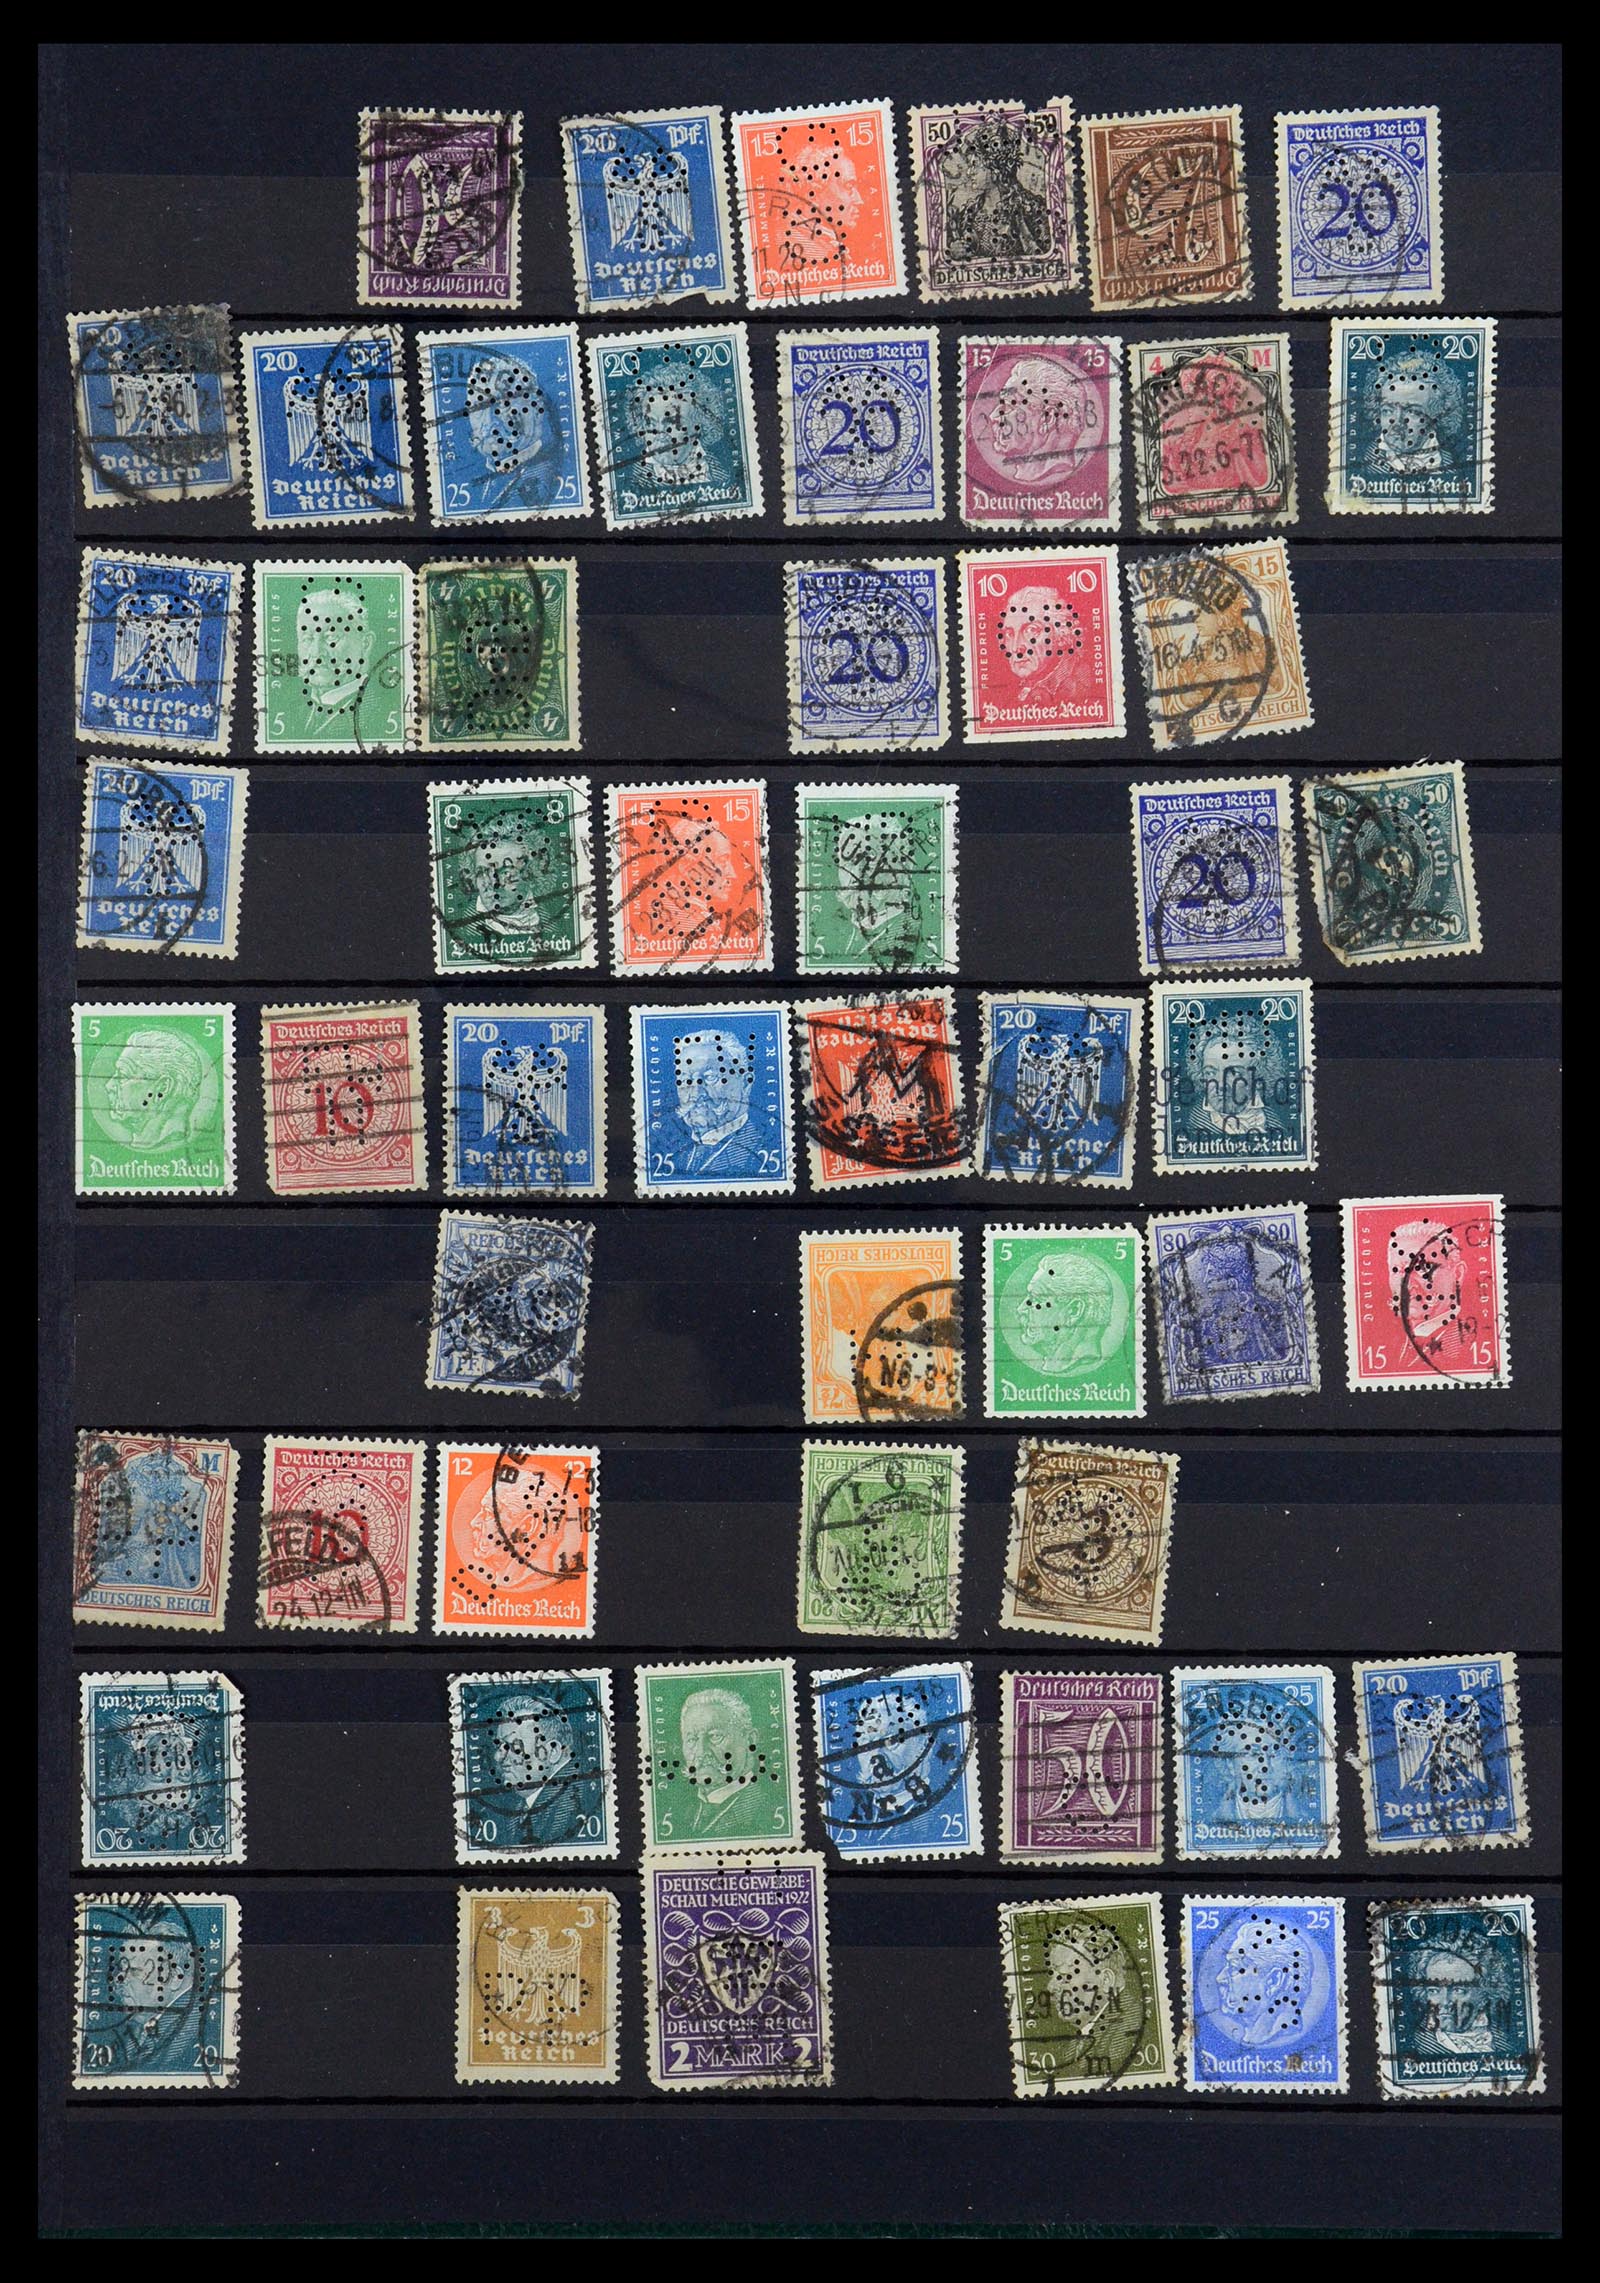 35183 004 - Stamp Collection 35183 German Reich perfins 1880-1945.